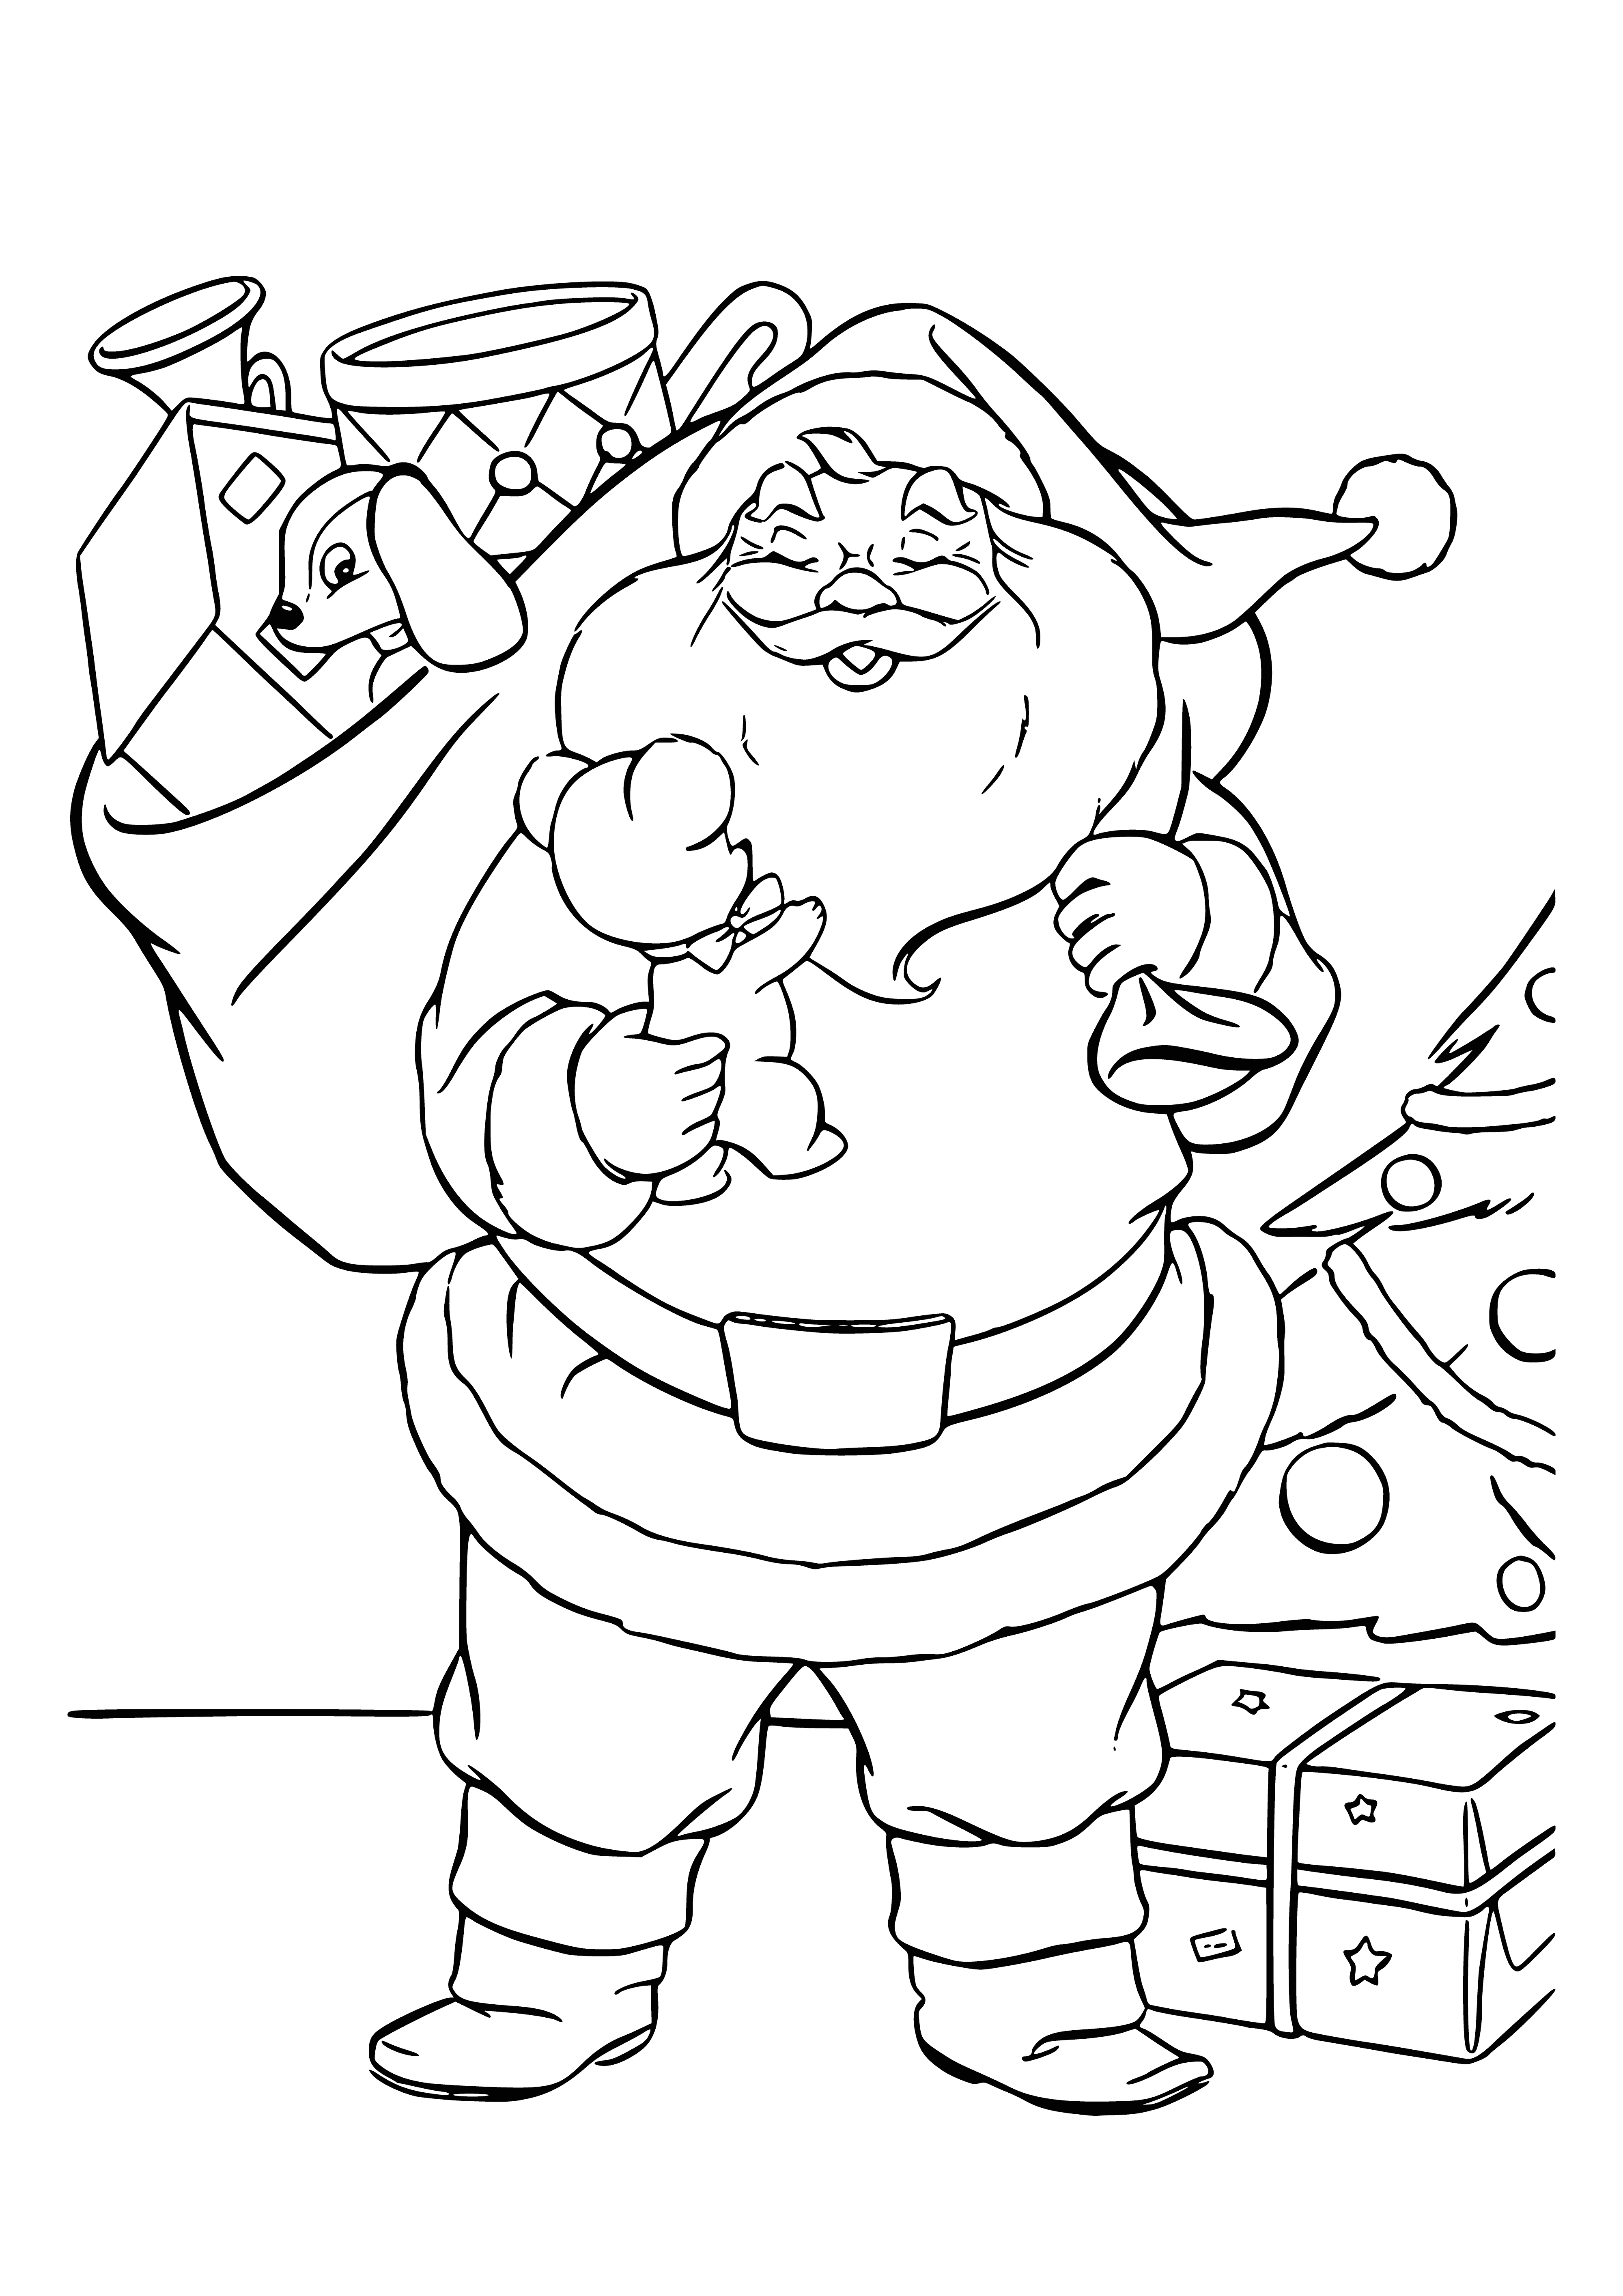 Санта Клаус раскраска